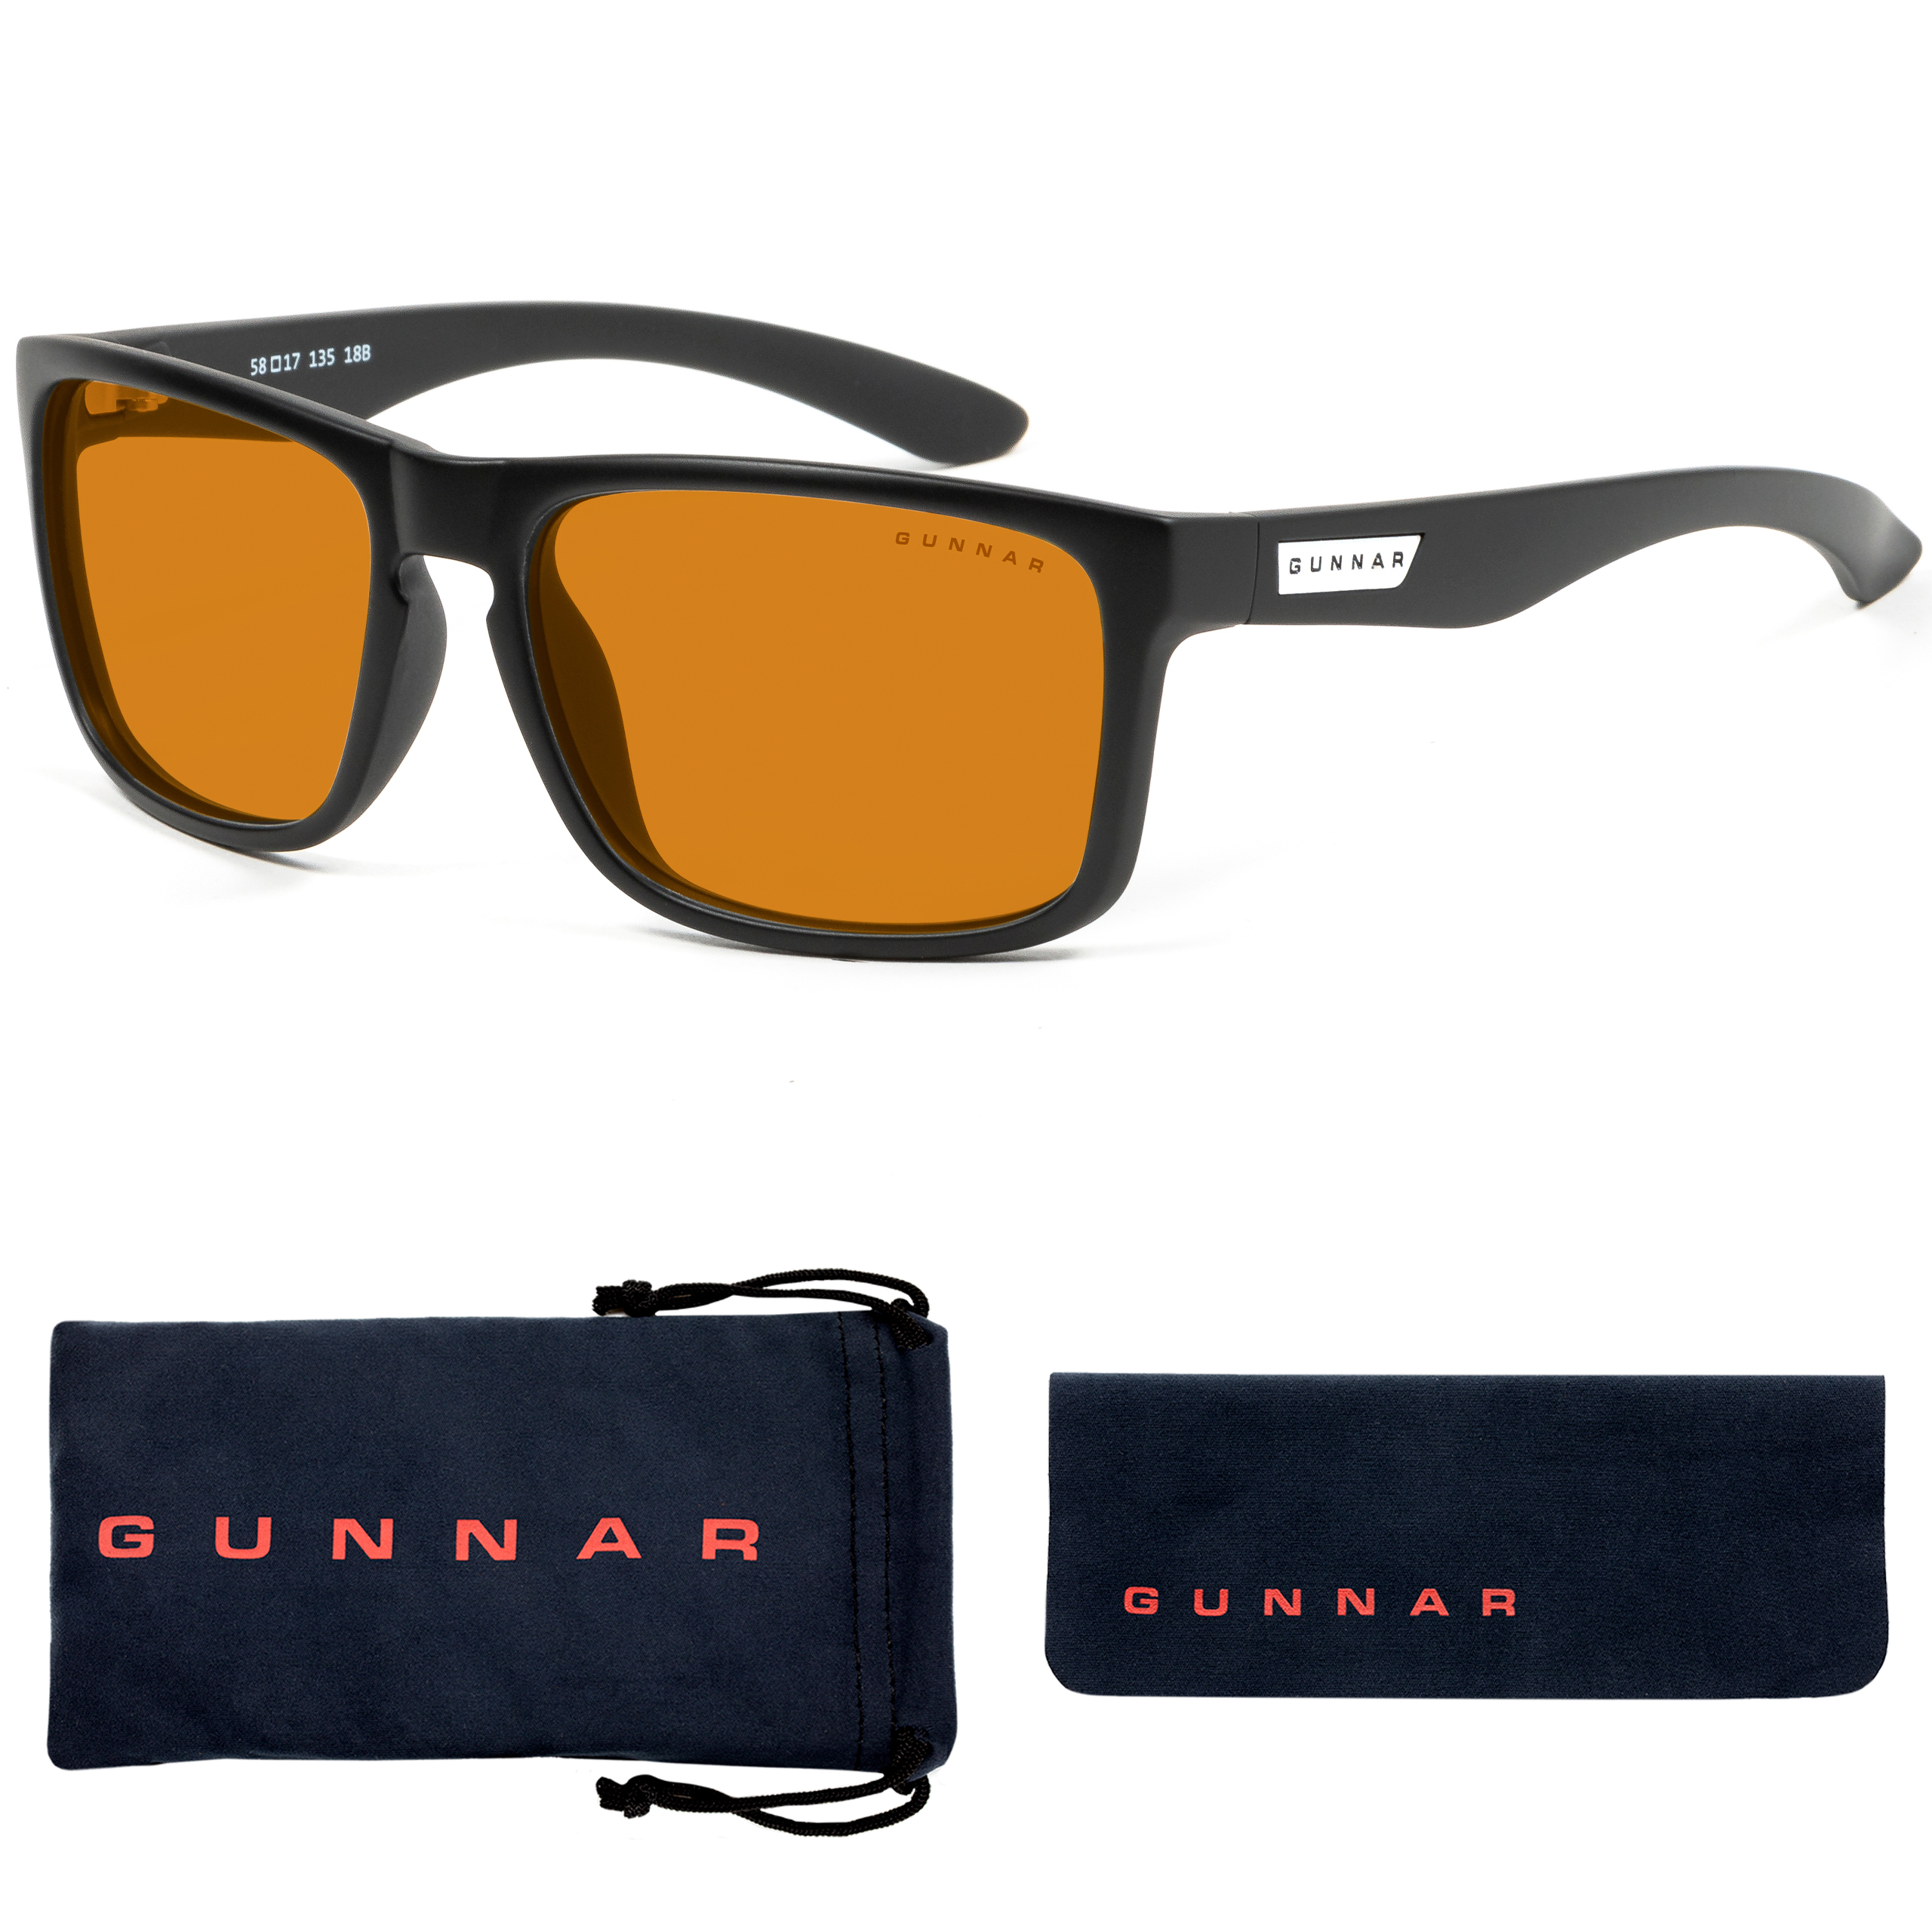 GUNNAR Intercept, Rahmen, Tönung, Onyx Premium, Blaulichtfilter, Brille MAX Gaming UV-Schutz, Amber